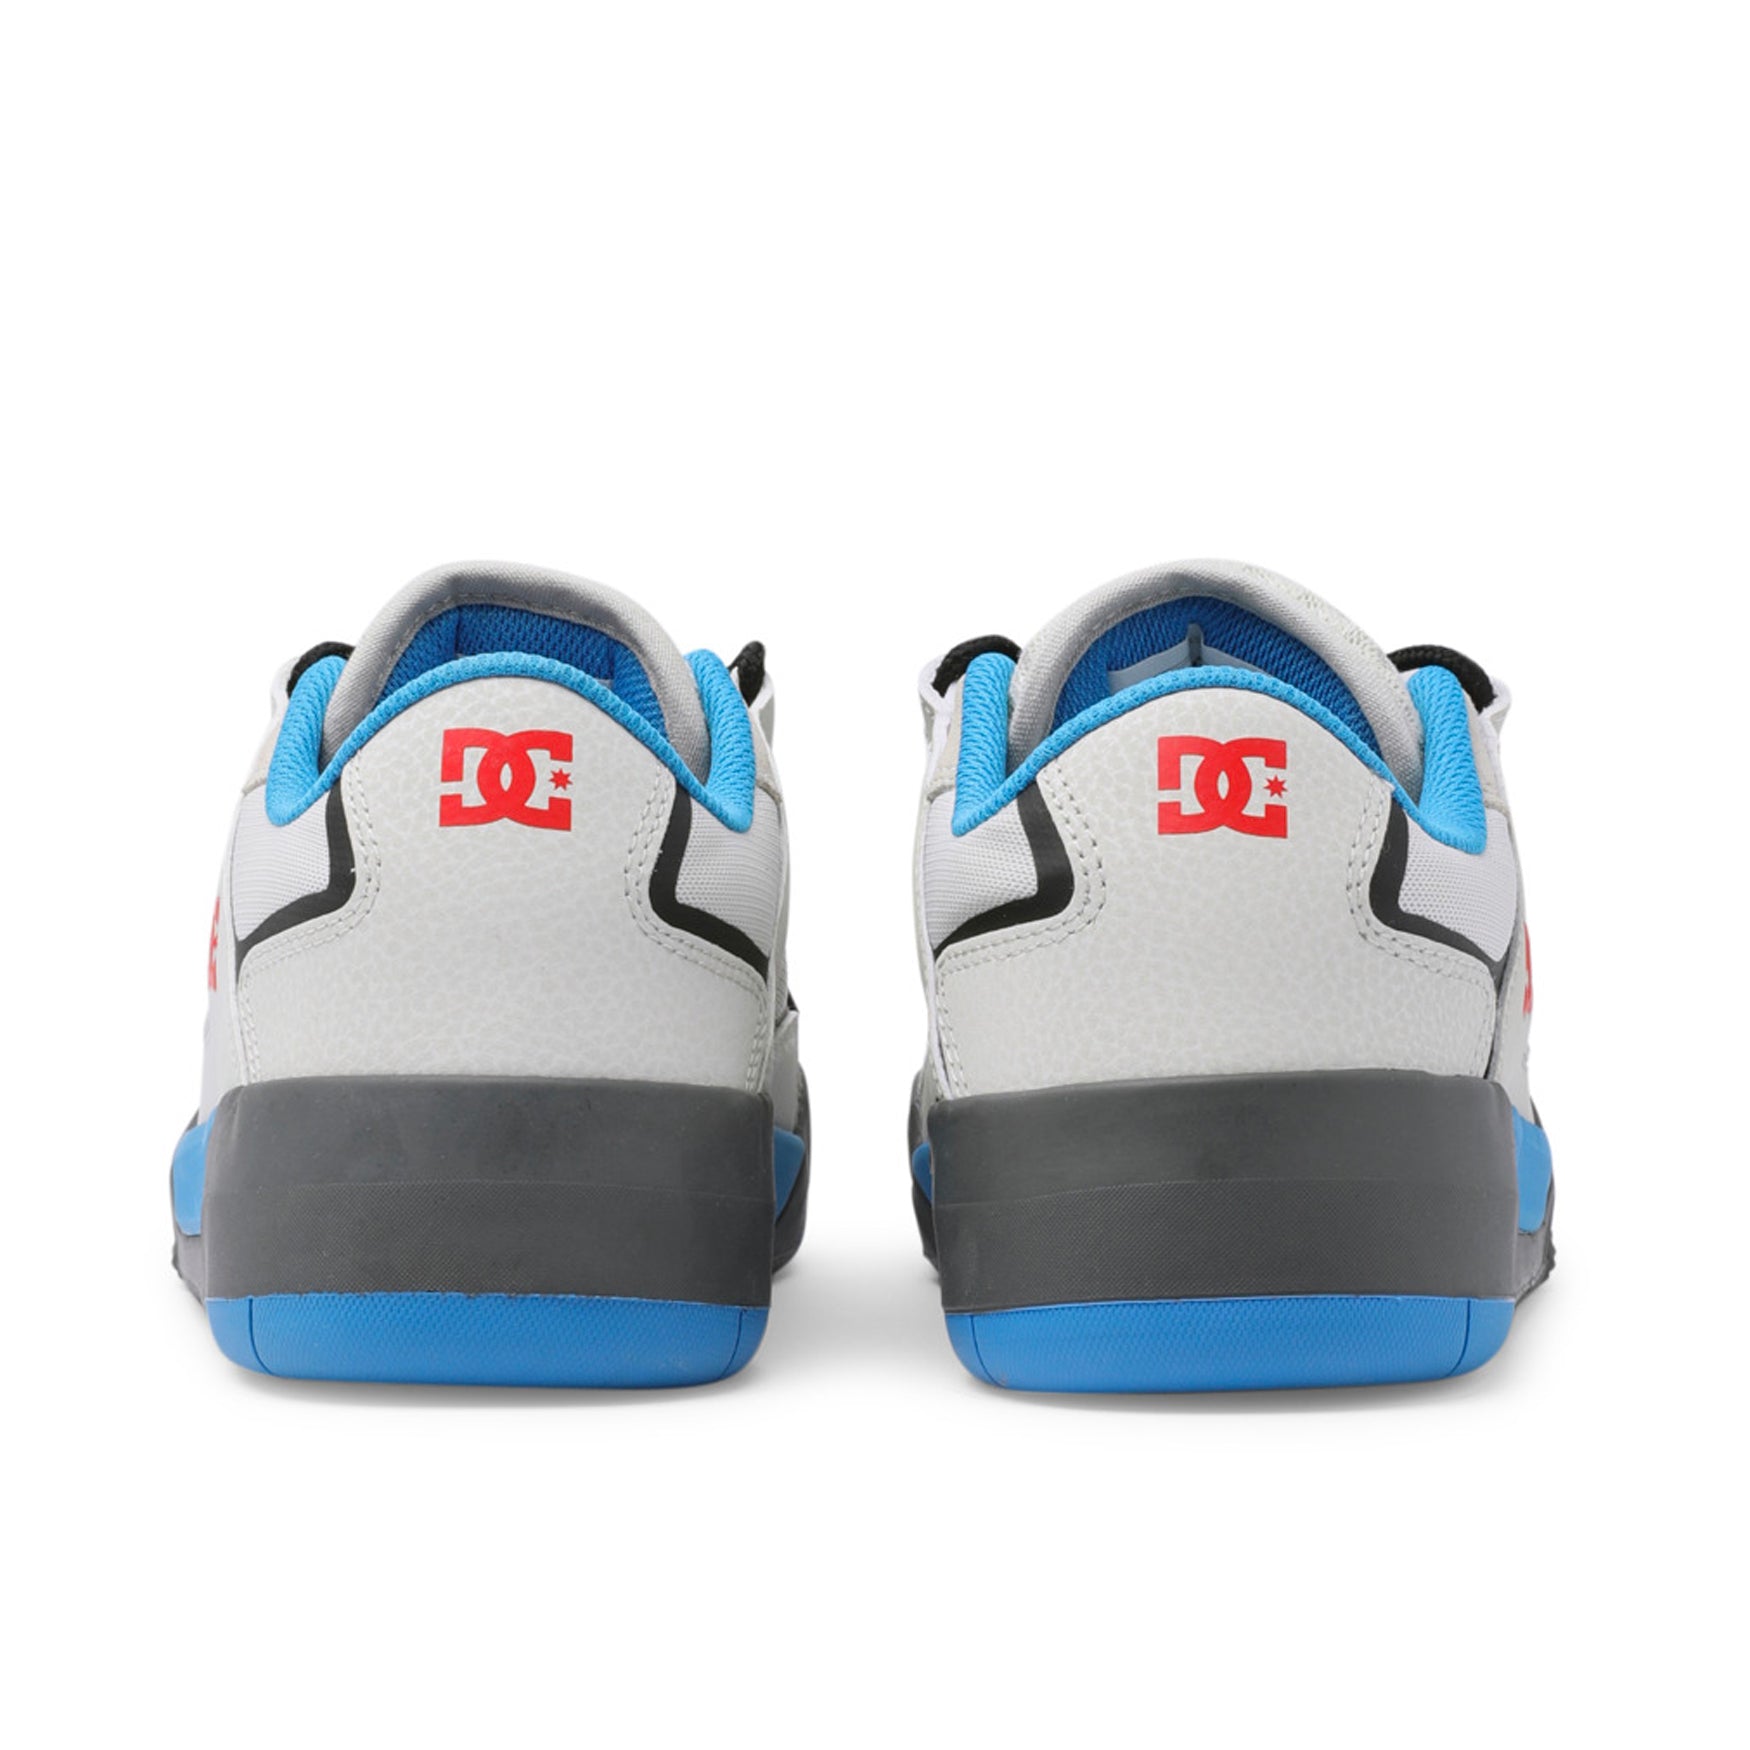 DC Metric LE Shoes - Blue/ White - Prime Delux Store